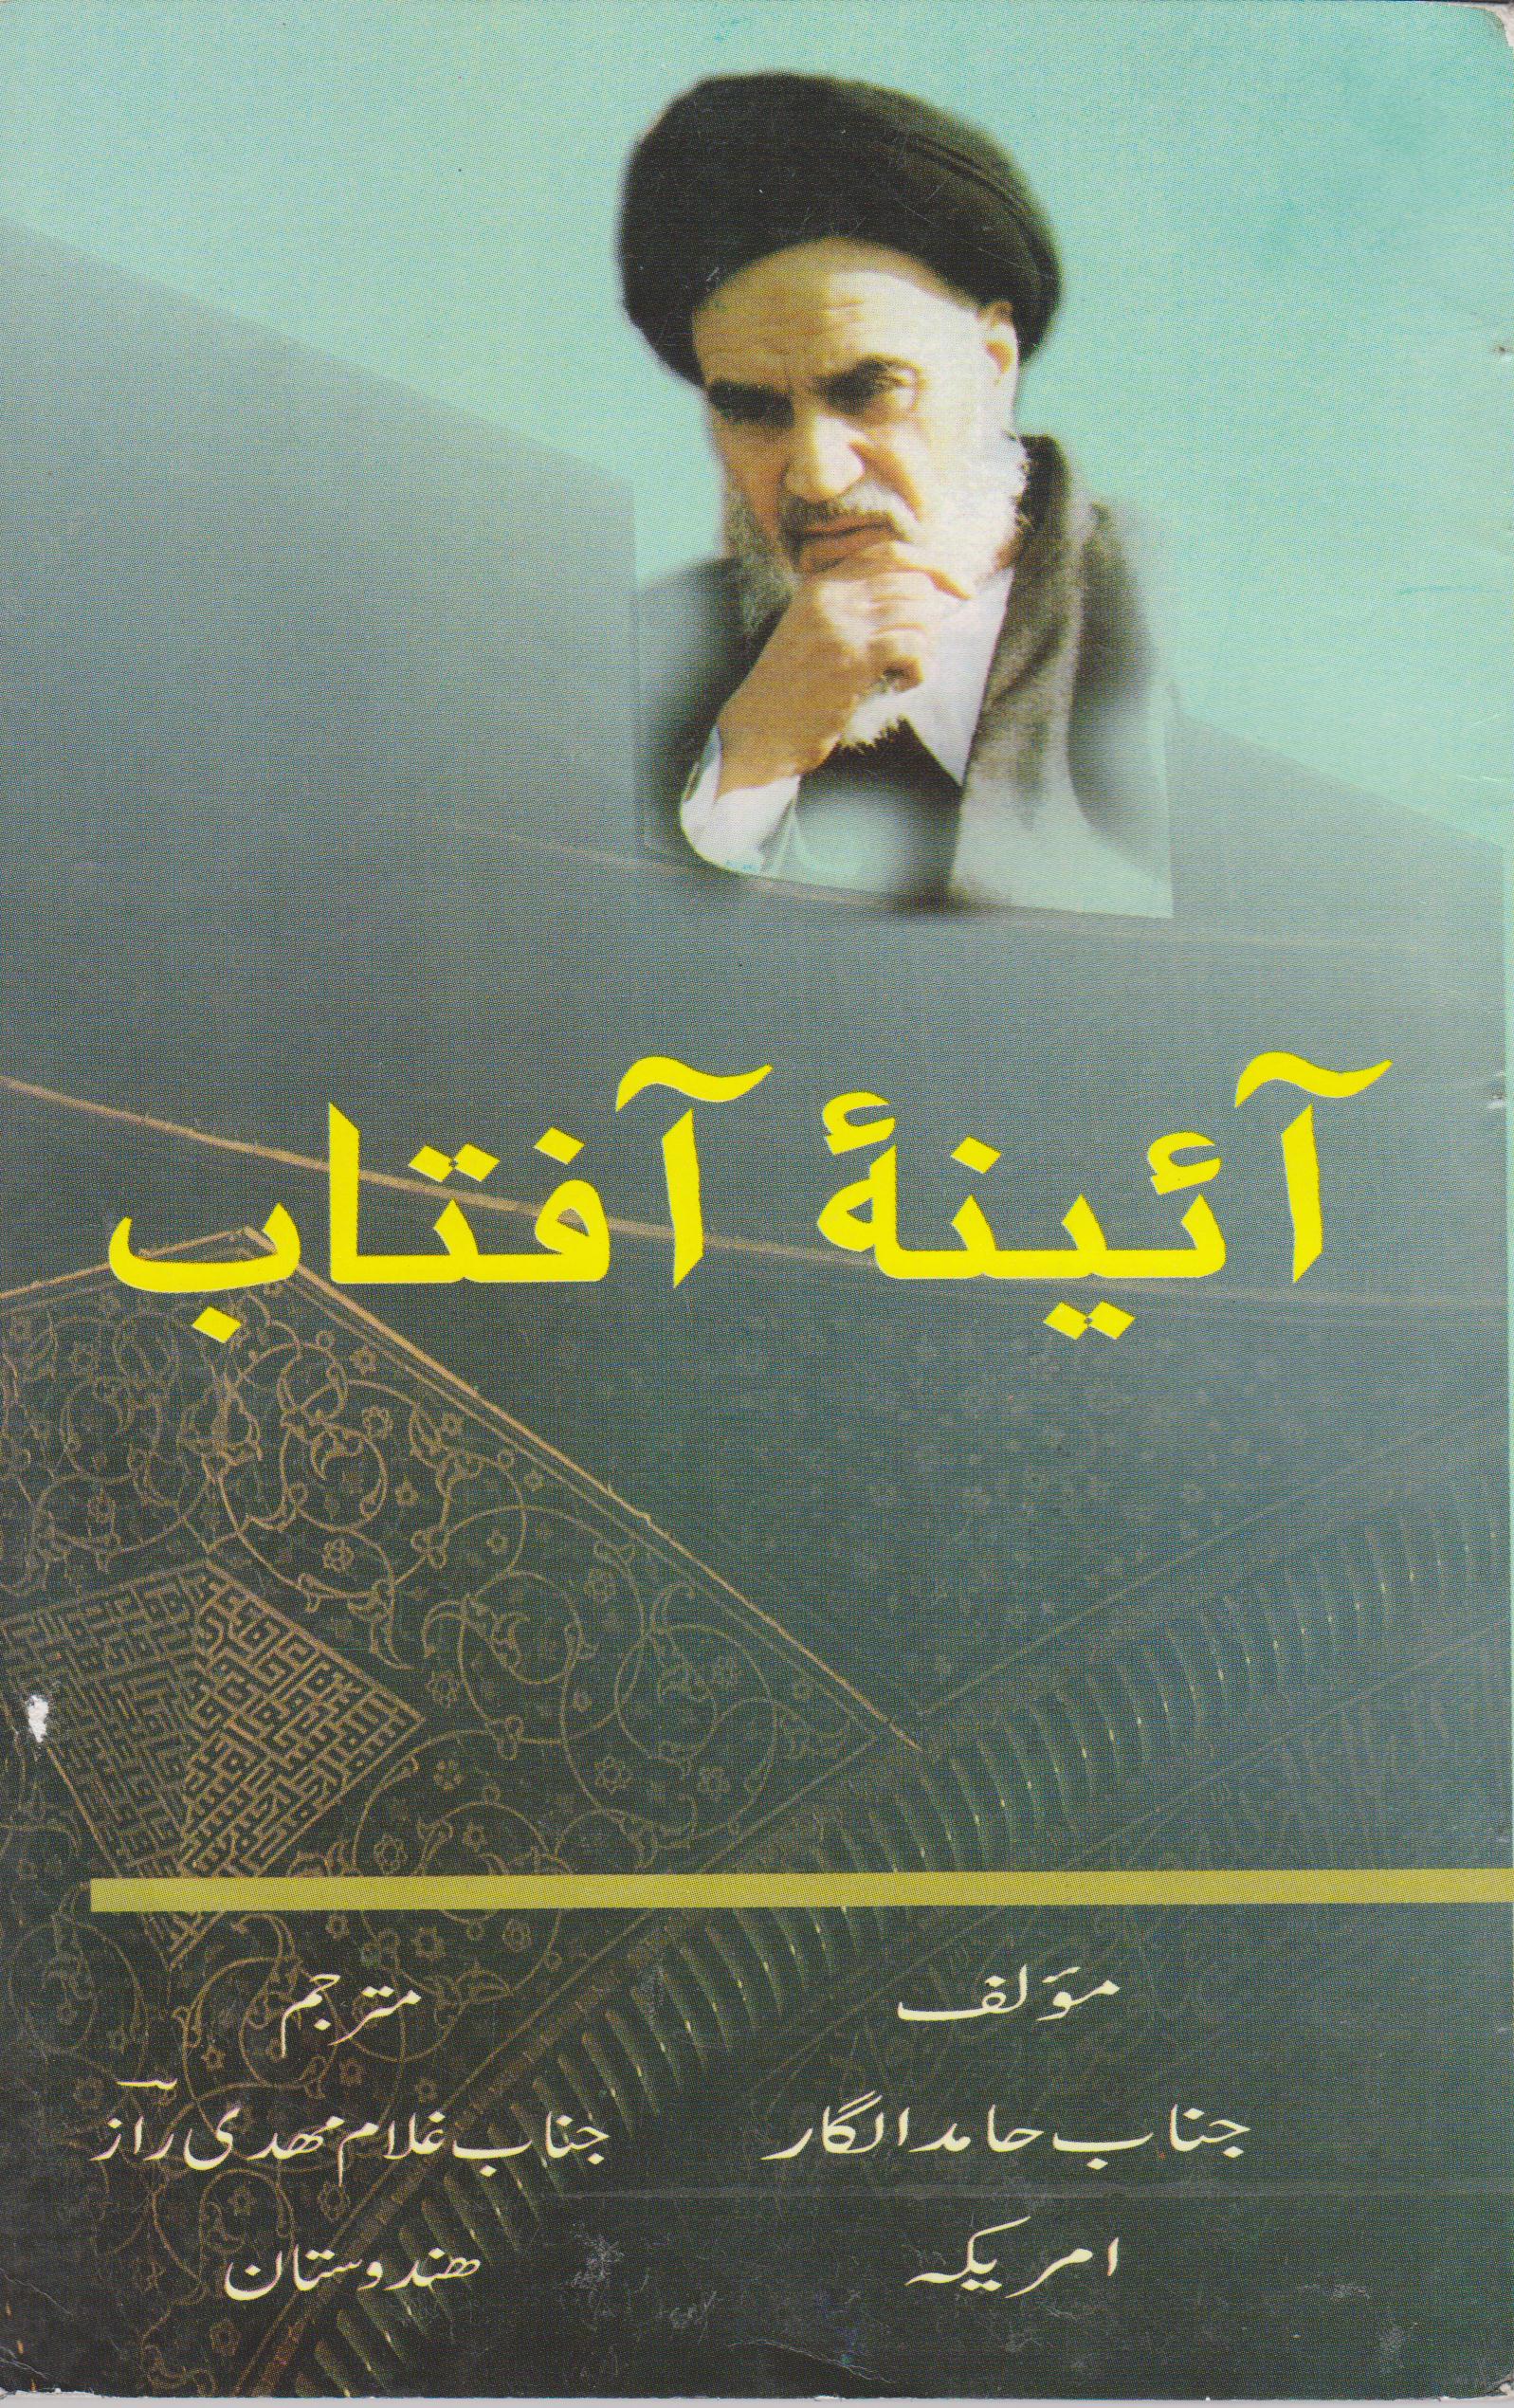 Ainae Aftab - Biography from Hamed Alghar - URDU